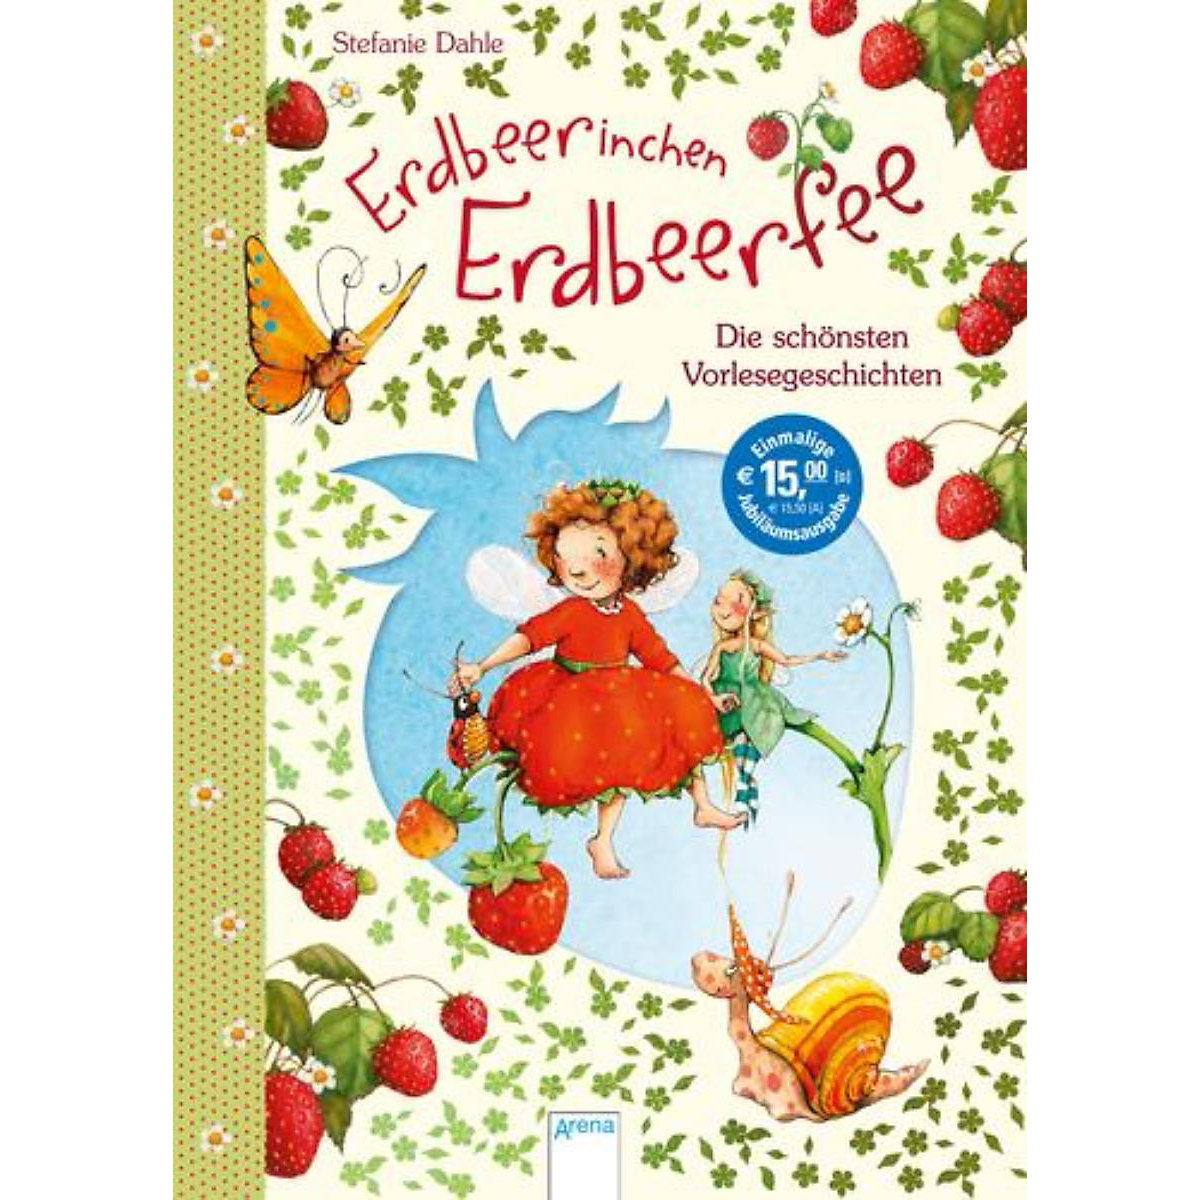 Erdbeerinchen Erdbeerfee: Die schönsten Vorlesegeschichten